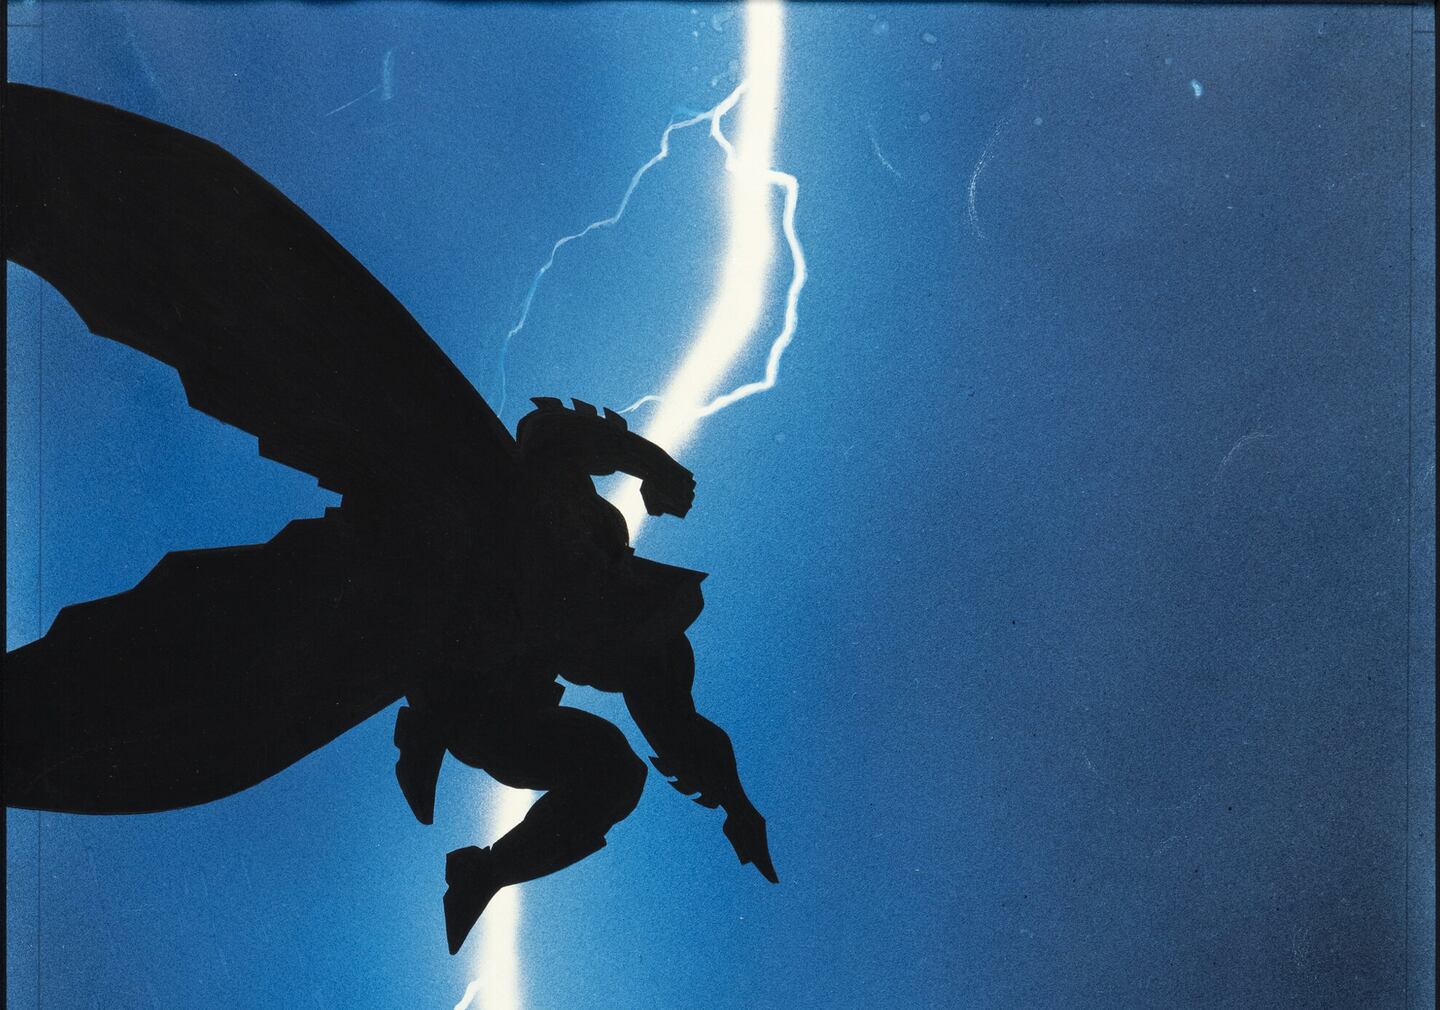 Minissérie de quatro edições, escrita por Frank Miller, é amplamente creditada por transformar o Batman em uma obra mais sofisticada